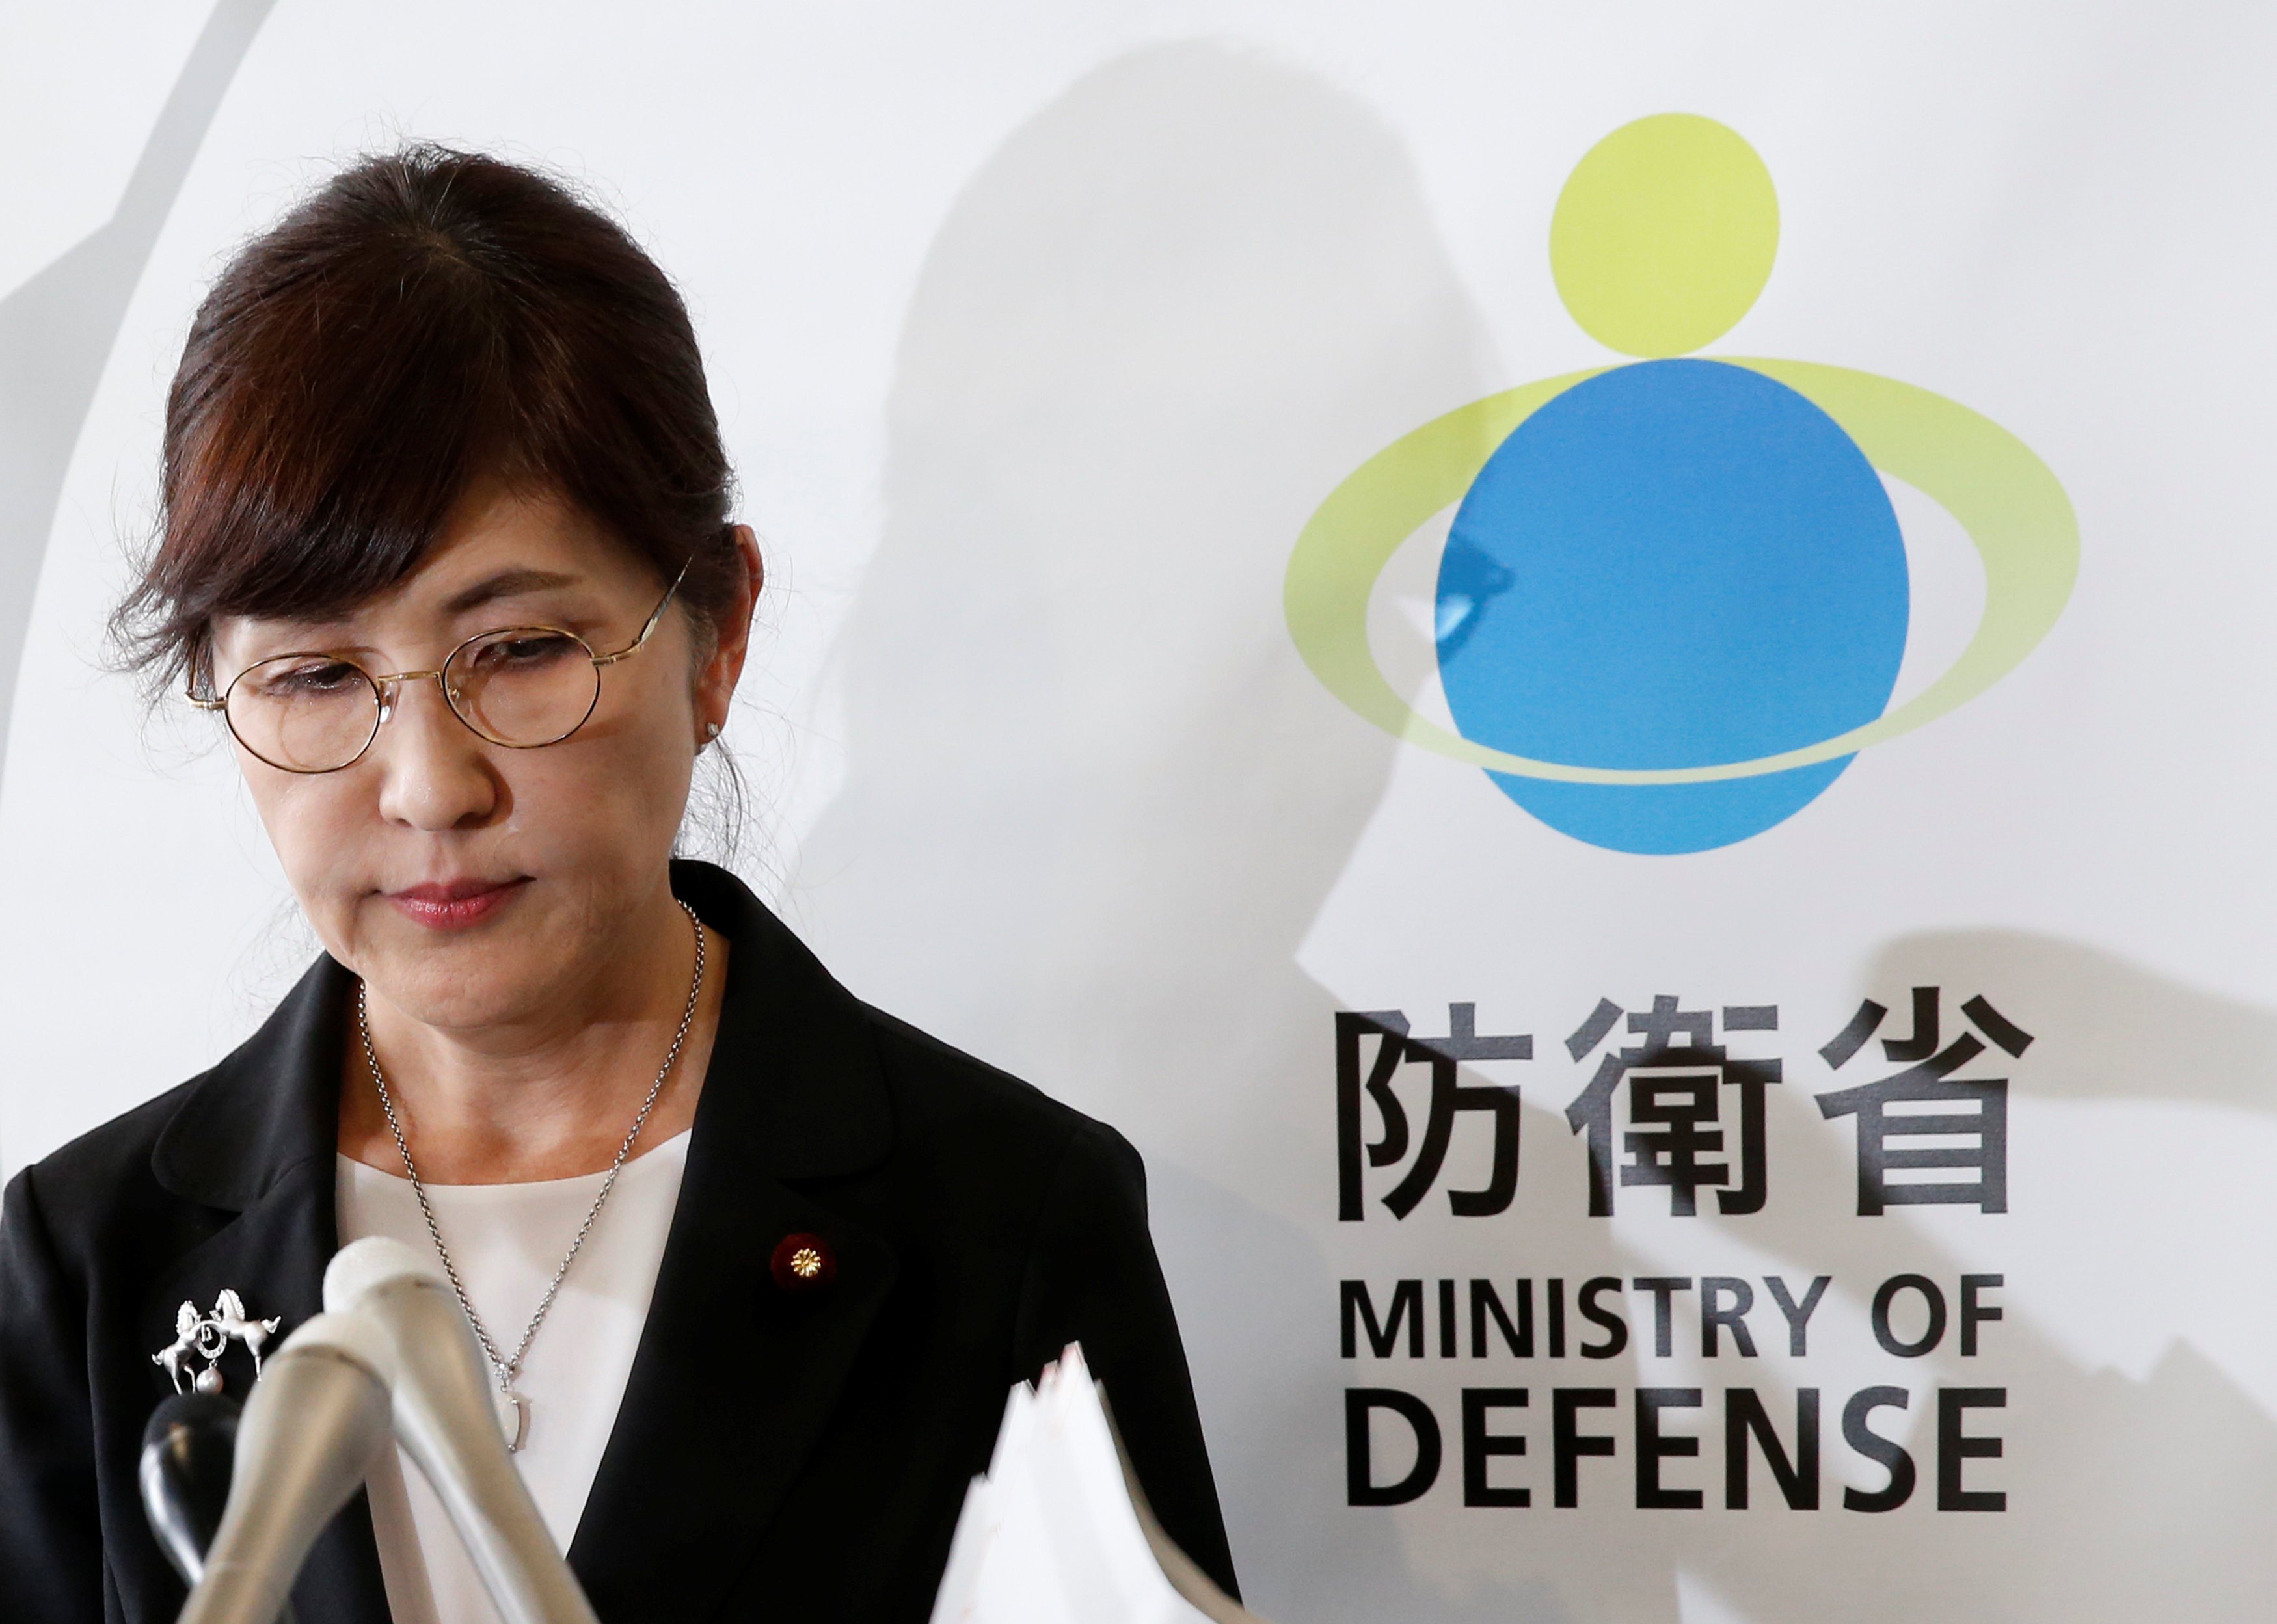 وزيرة الدفاع اليابانية تومومى إينادا  خلال مؤتمر اعلان الاستقالة